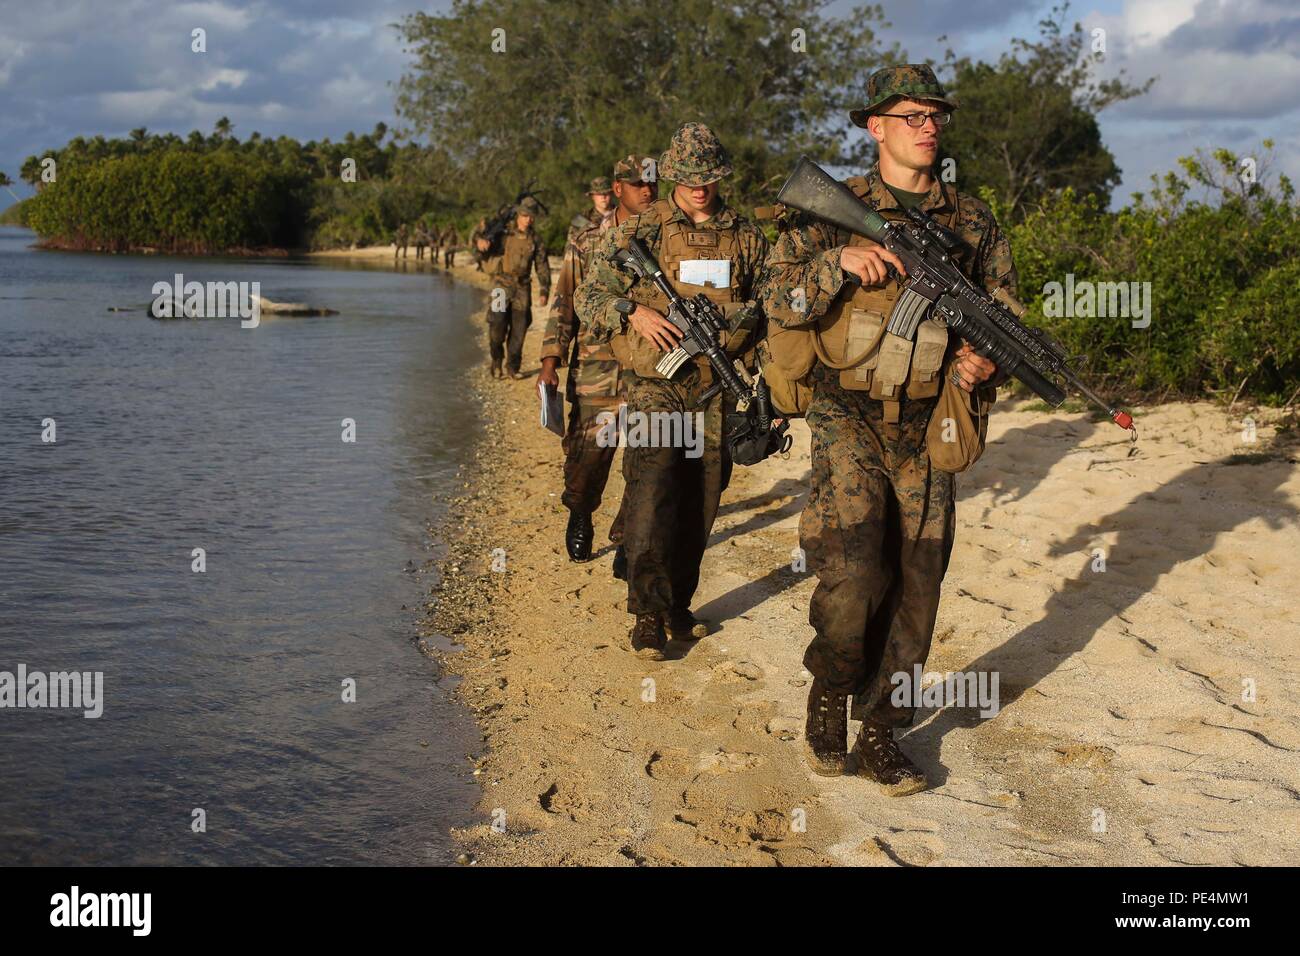 Les Marines américains de la société B, 1er Bataillon, 4e Régiment de Marines, la Force de rotation maritime - Darwin, mener des opérations de patrouille et de s'engager dans des attaques au niveau du peloton avec des troupes de Sa Majesté des Forces armées de Tonga, la New Zealand Defence Force, l'armée française de Nouvelle-Calédonie et la Garde royale tongane durant leur point culminant dans l'exercice d'Tafakula 15 septembre 9-11 sur l'île de Tongatapu (Tonga). Chaque force militaire divisée en sections intégrées pour l'événement que composé de 72 heures de patrouille, la navigation terrestre et d'attaquer les positions ennemies simulées. Le déploiement de rotation Banque D'Images